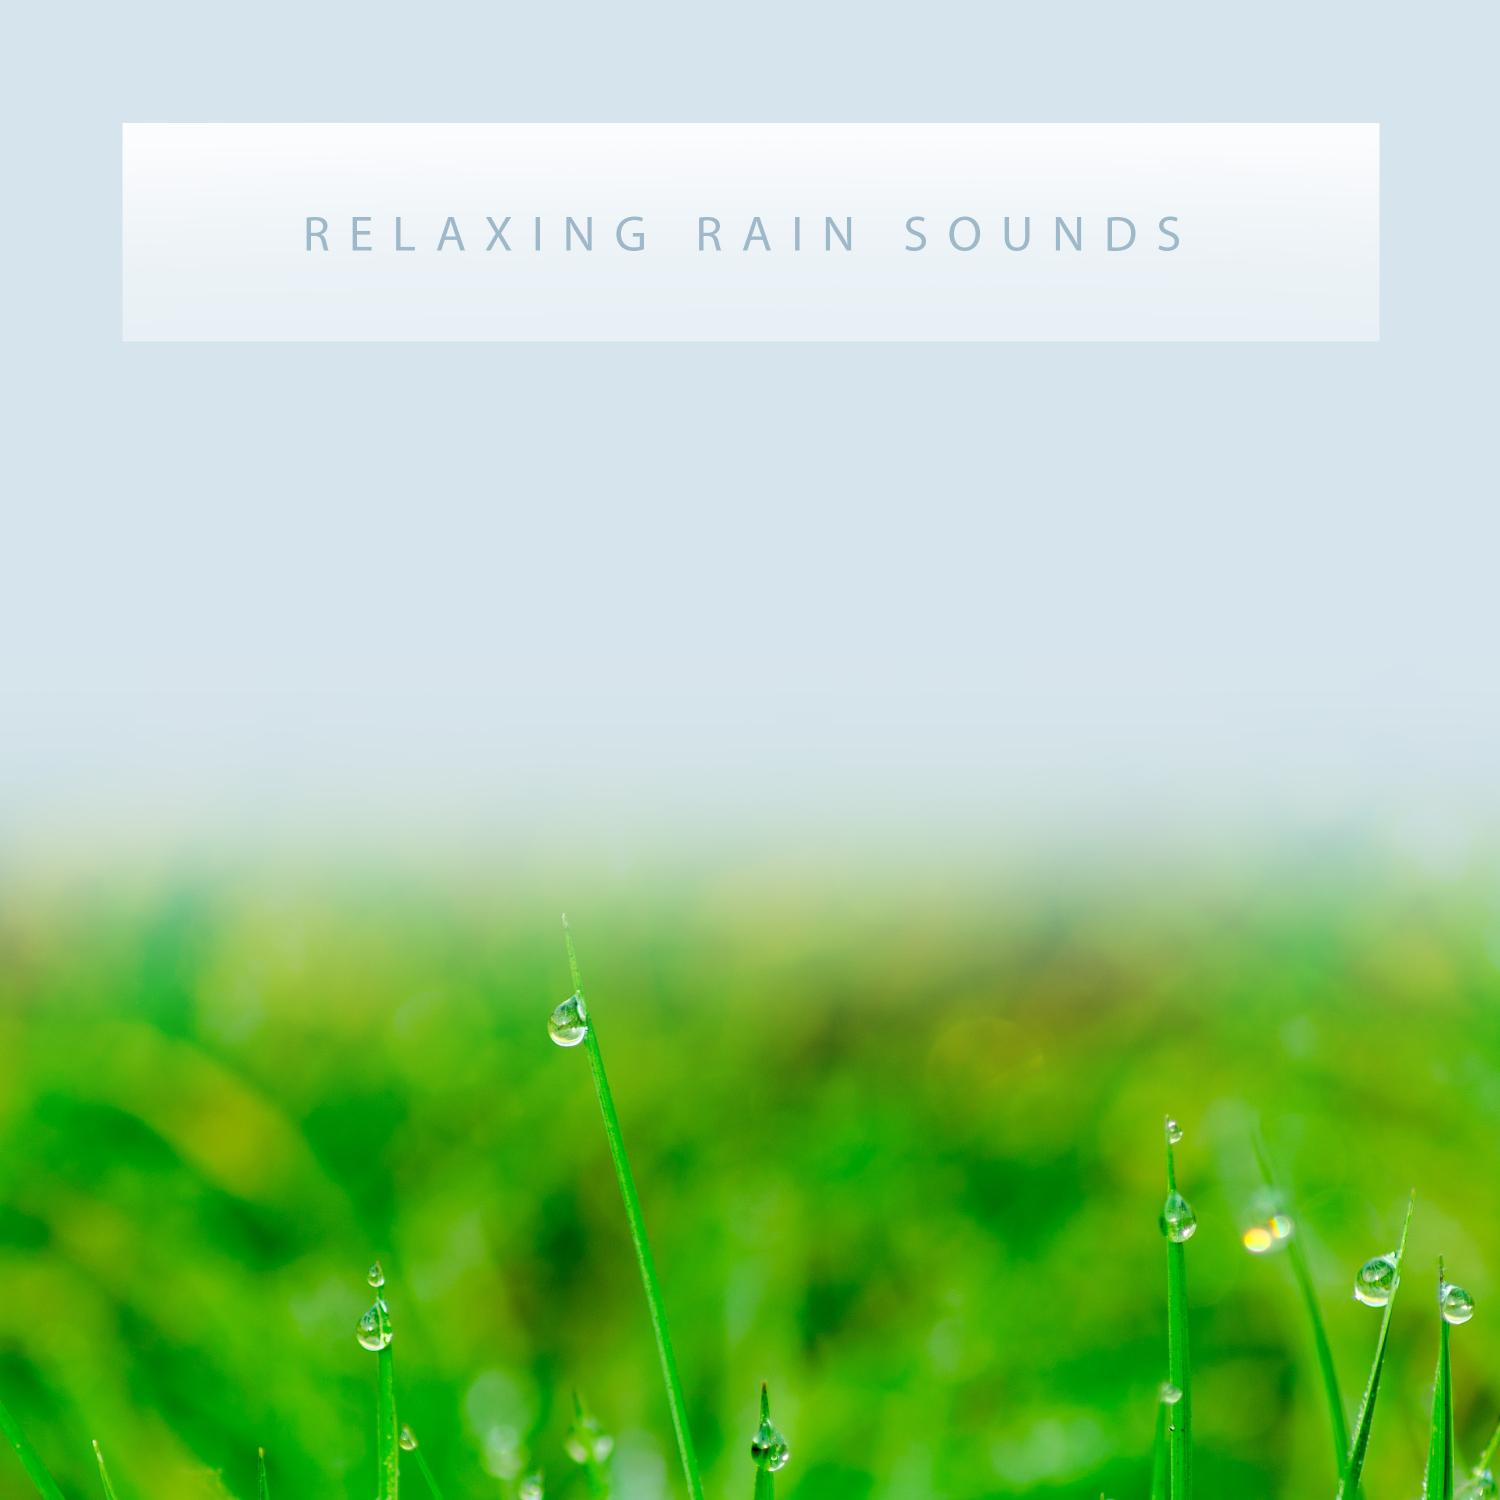 15 Relaxing Rain Sounds